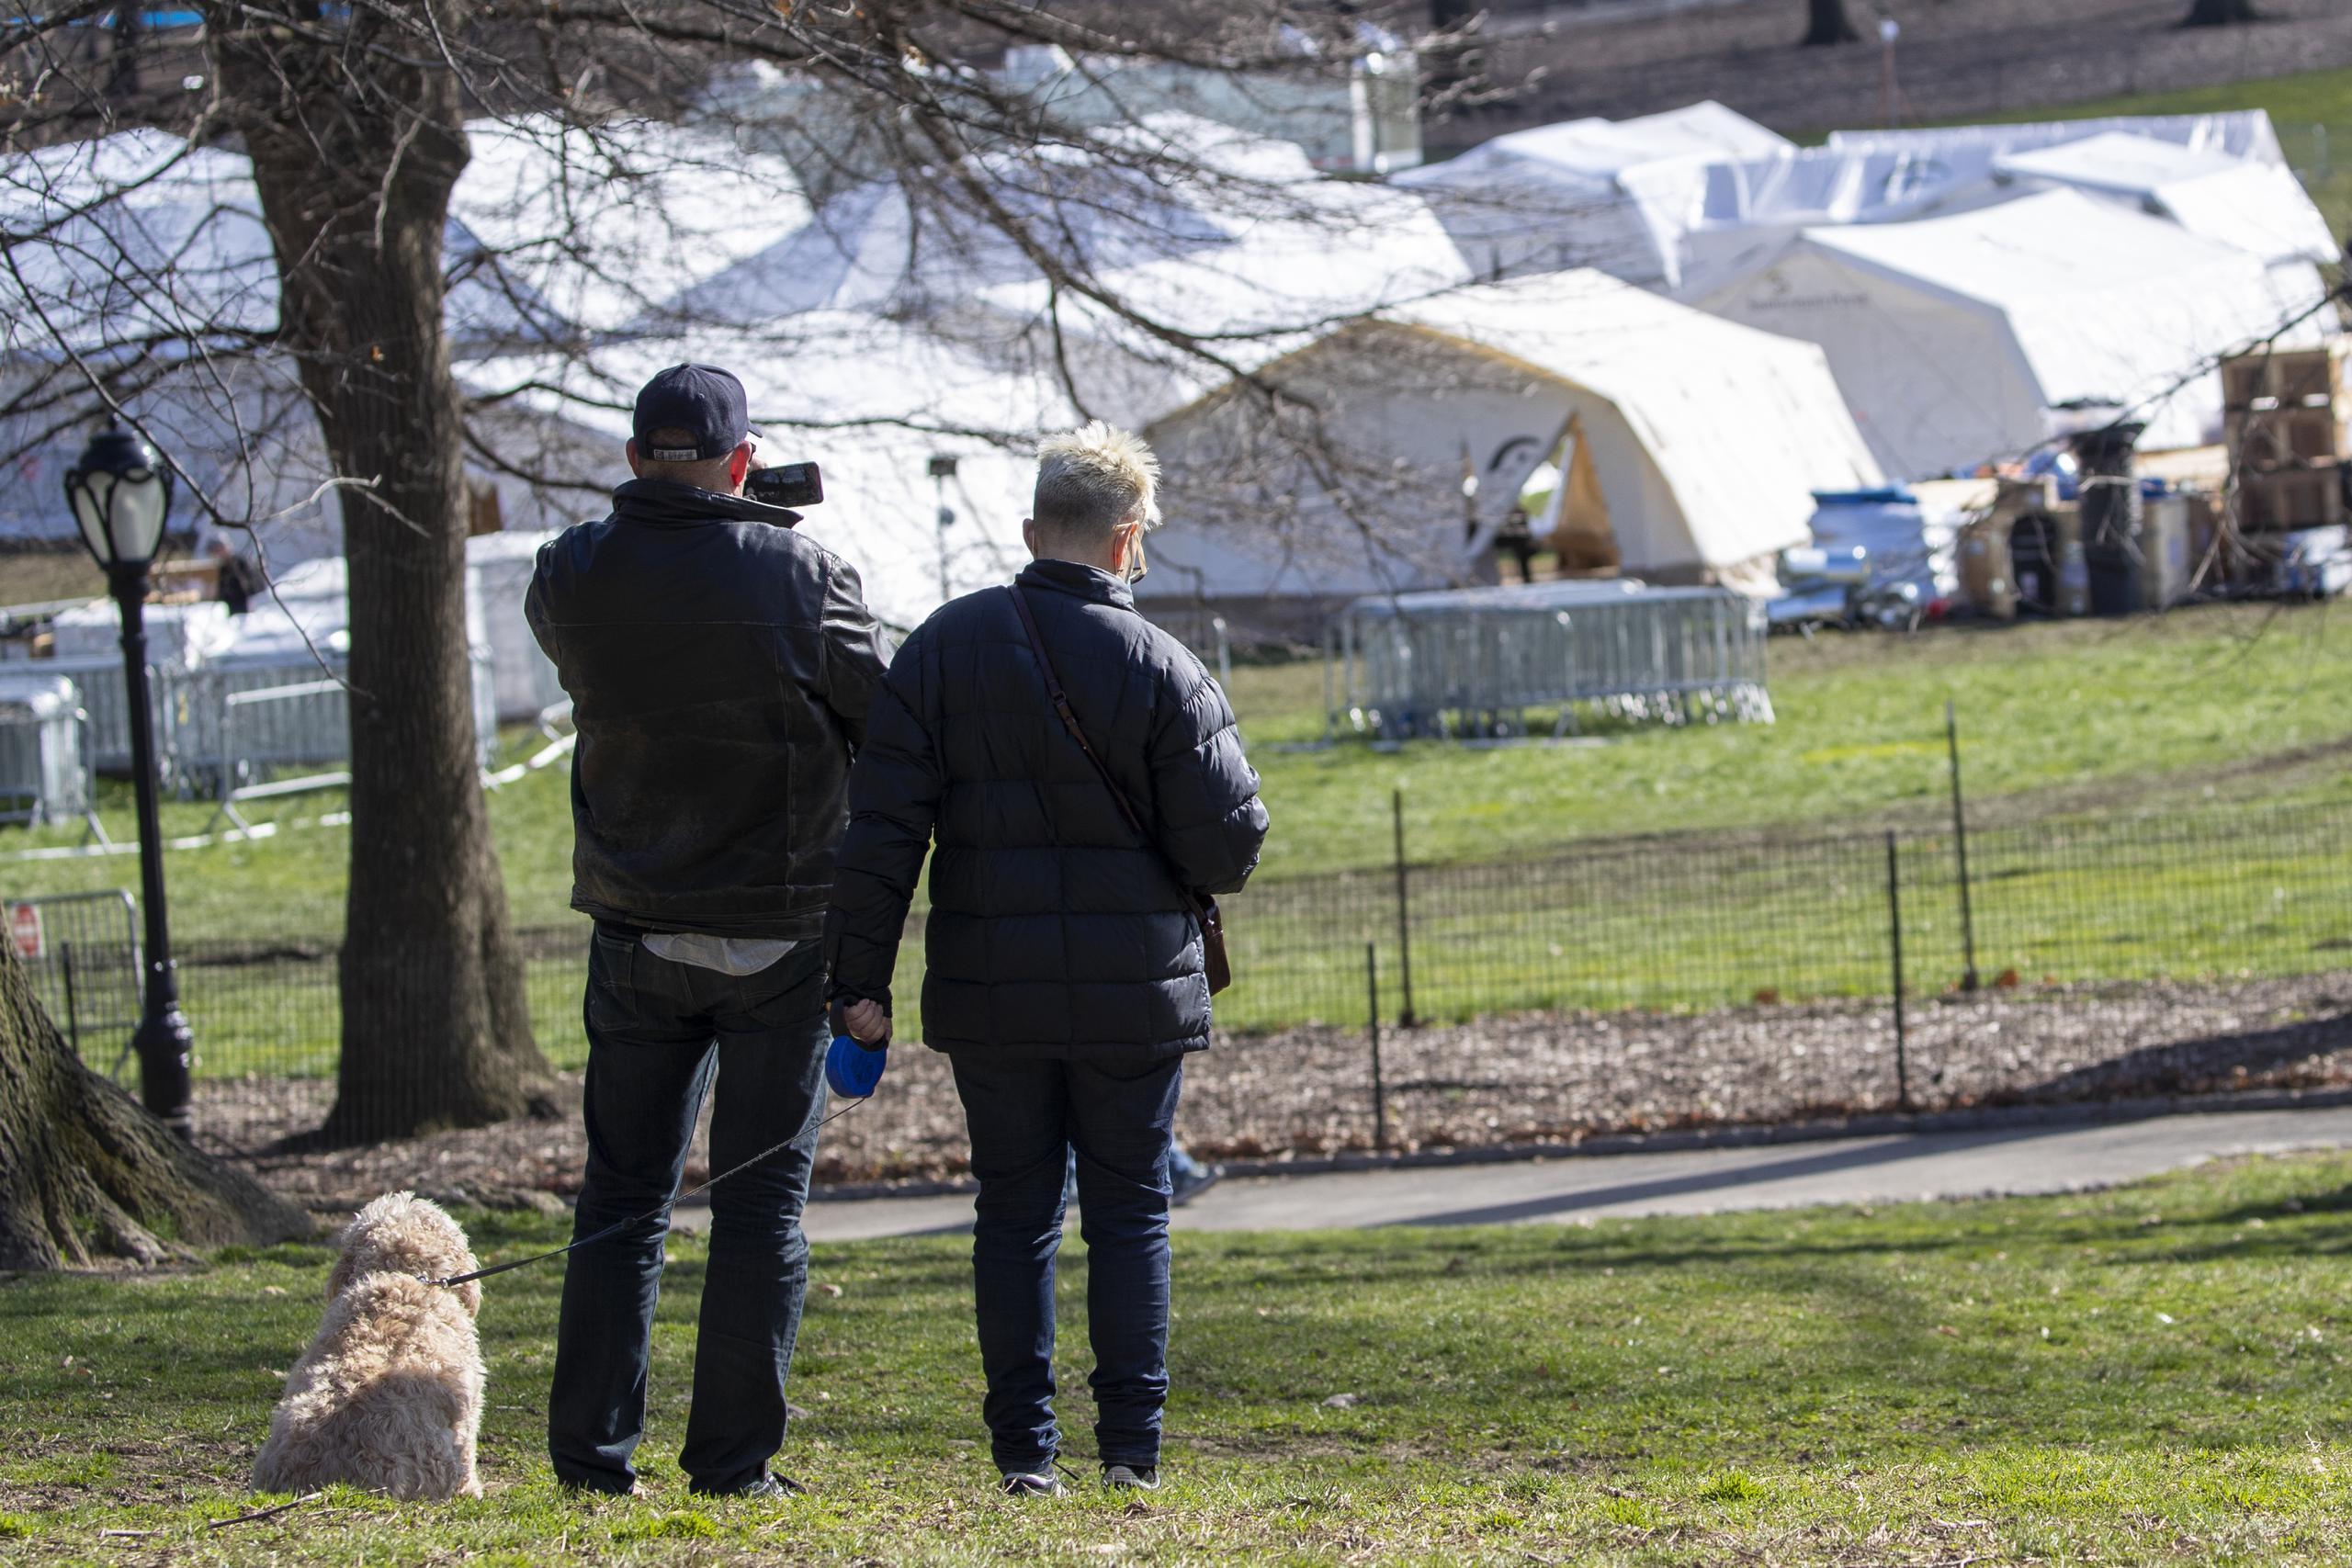 Una pareja se detiene a tomar una fotografía del hospital Samaritan's Purse mientras pasean a su perro por el Central Park de Nueva York, el miércoles 1 de abril de 2020. (AP Foto/Mary Altaffer)